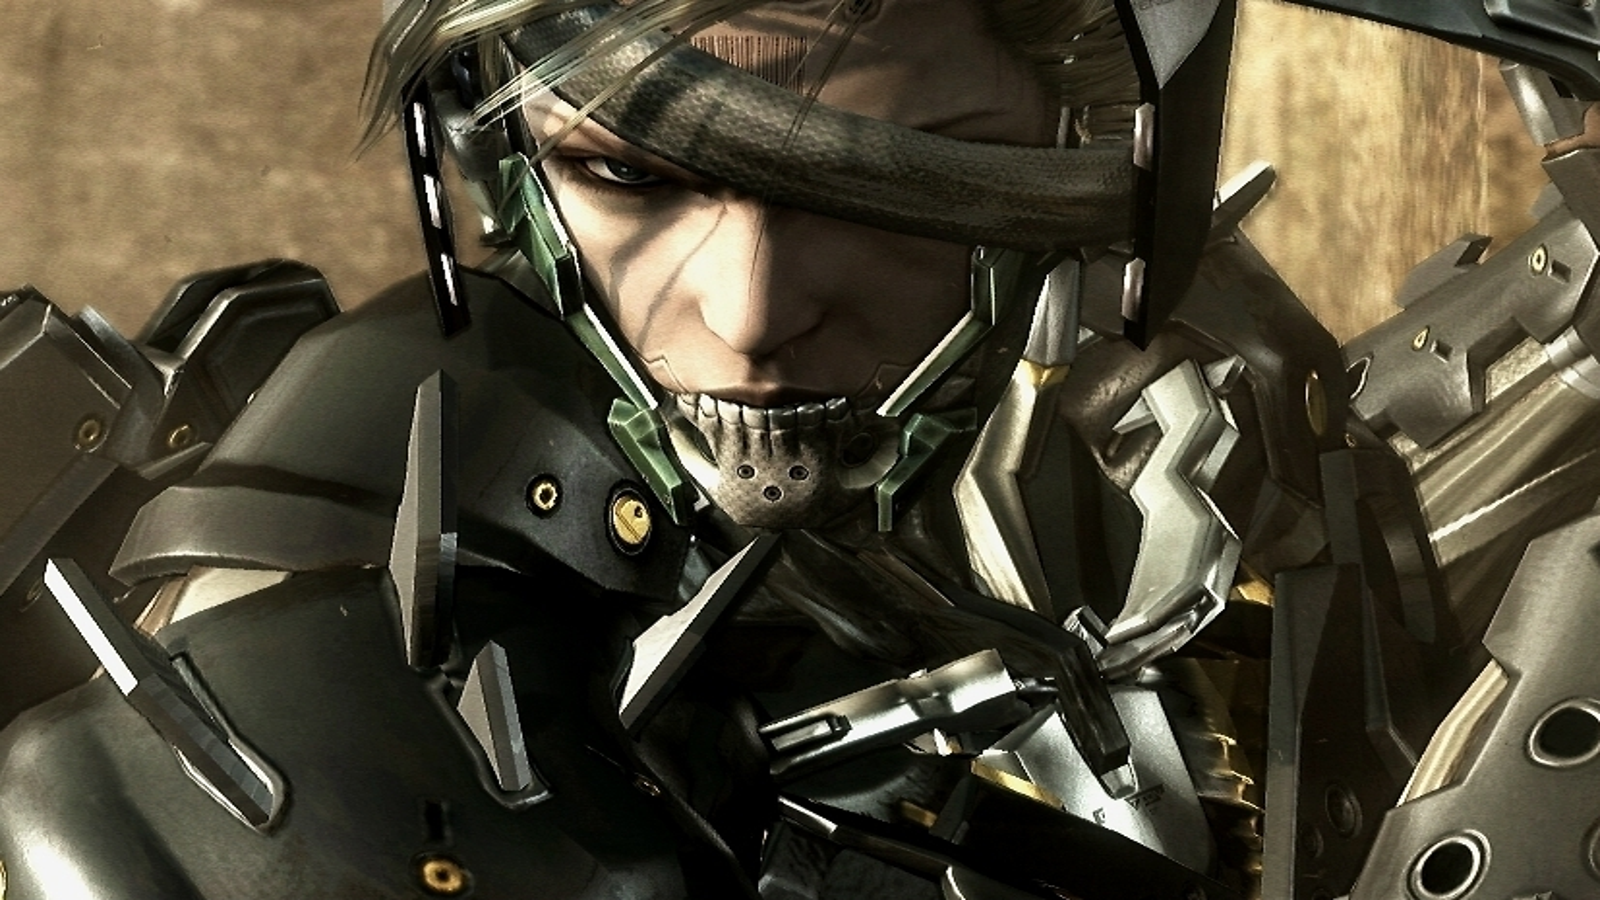 Metal Gear Rising: Revengeance, a Ten Year Reunion